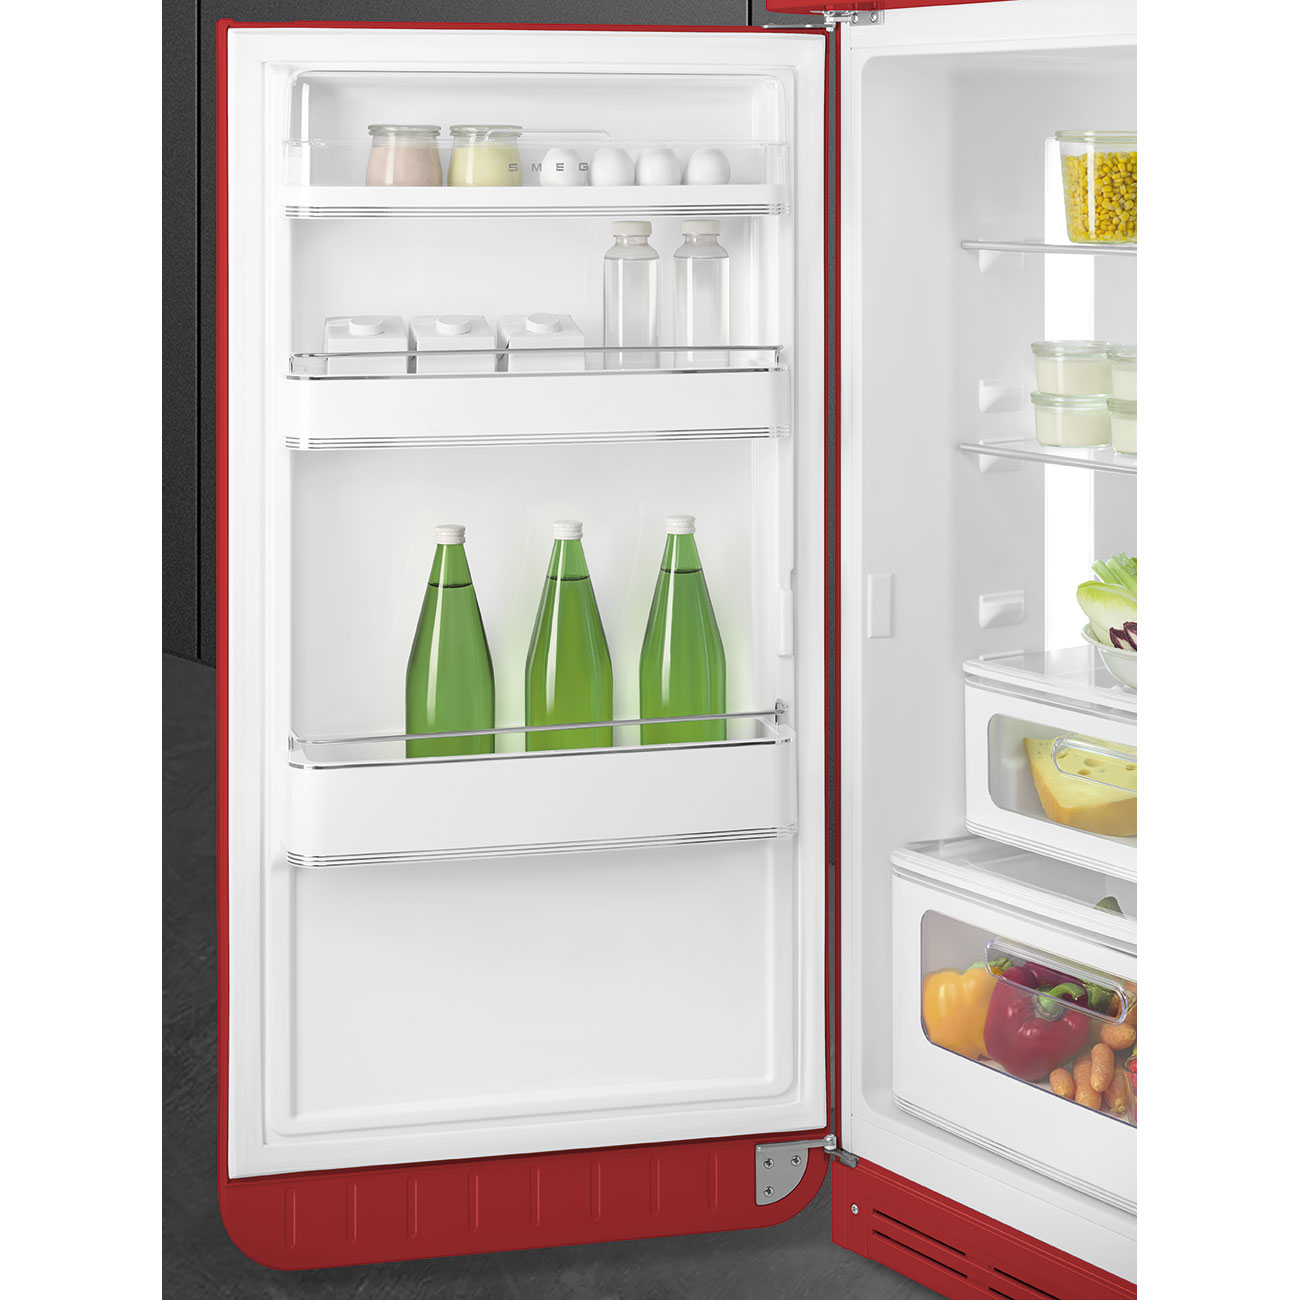 Red refrigerator - Smeg_7